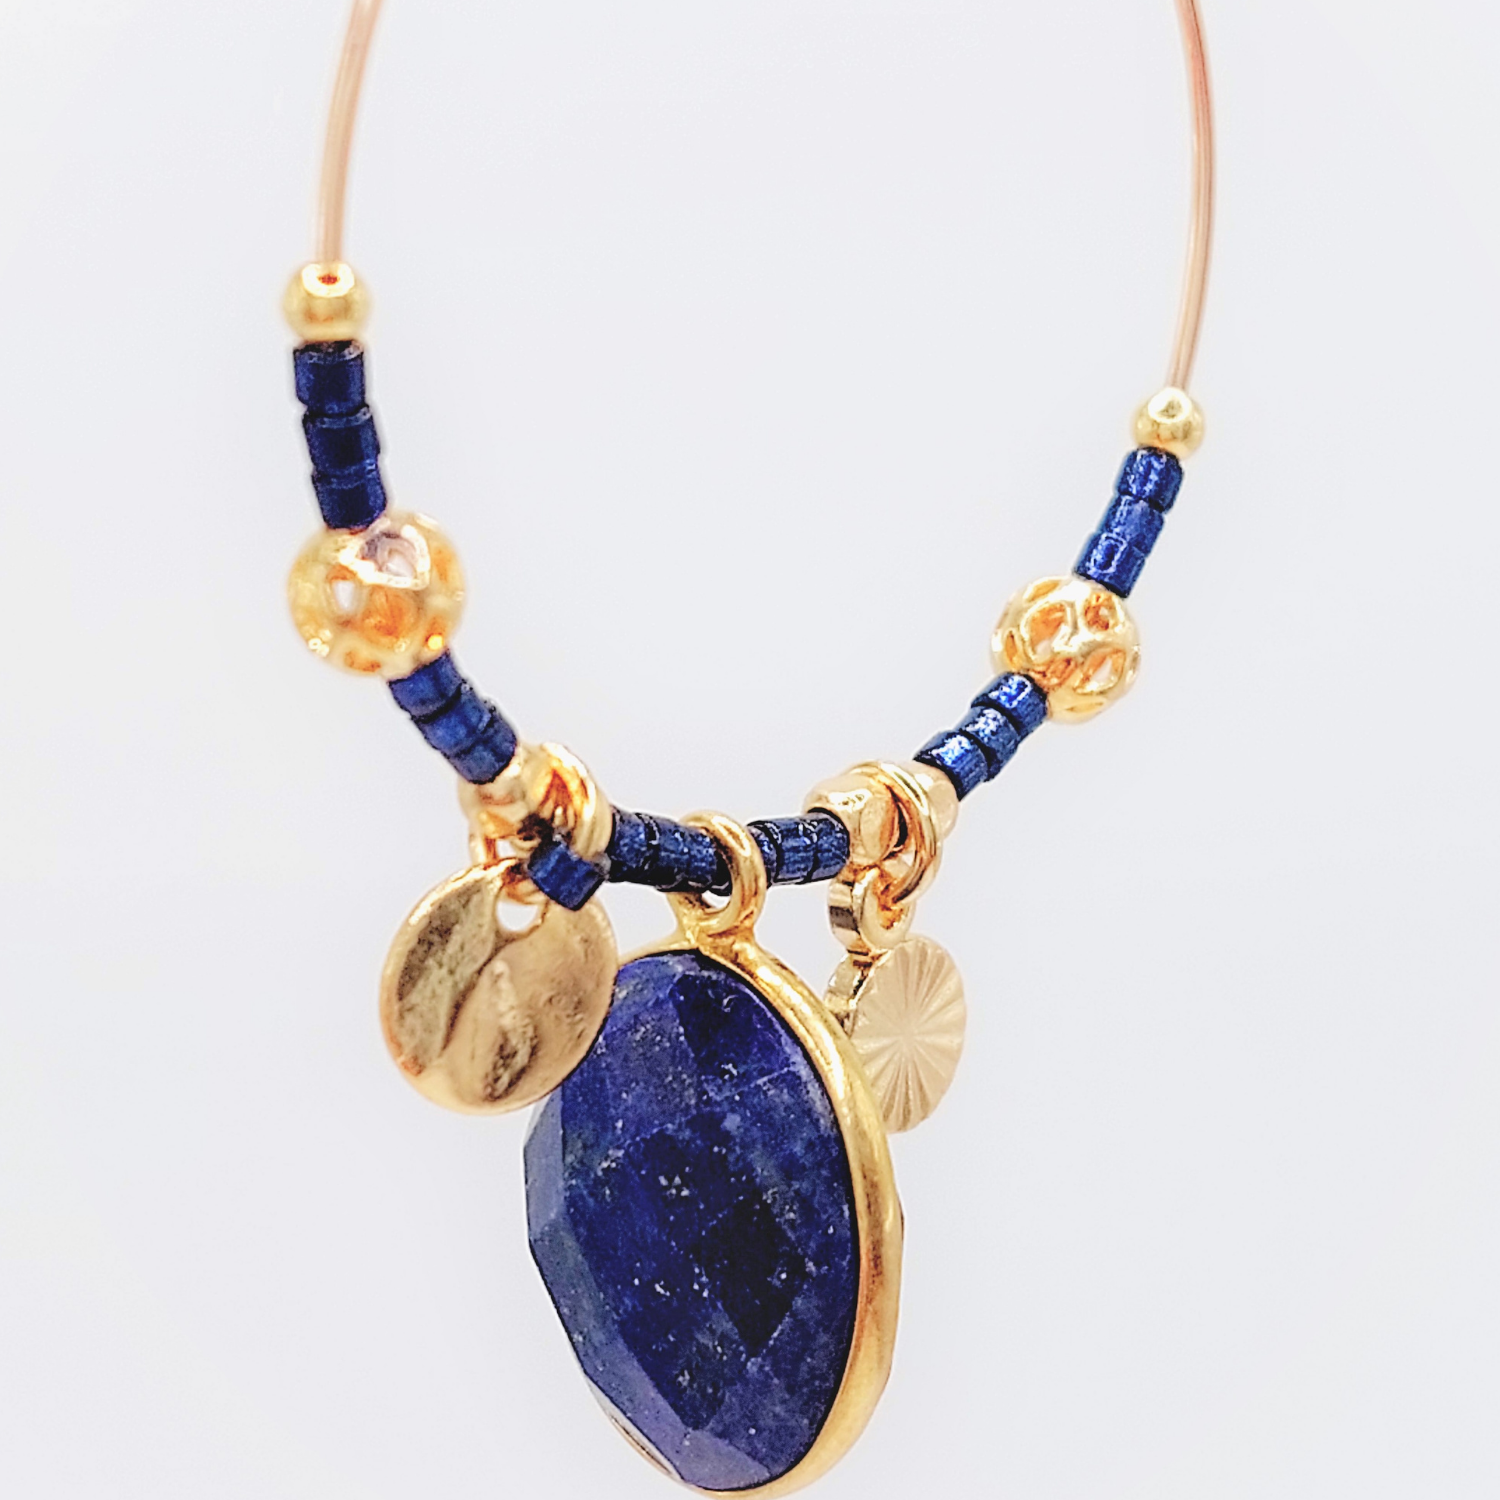 l-insolente-bijoux-boucle-d-oreille-creole-gold filled-lapis lazuli-5